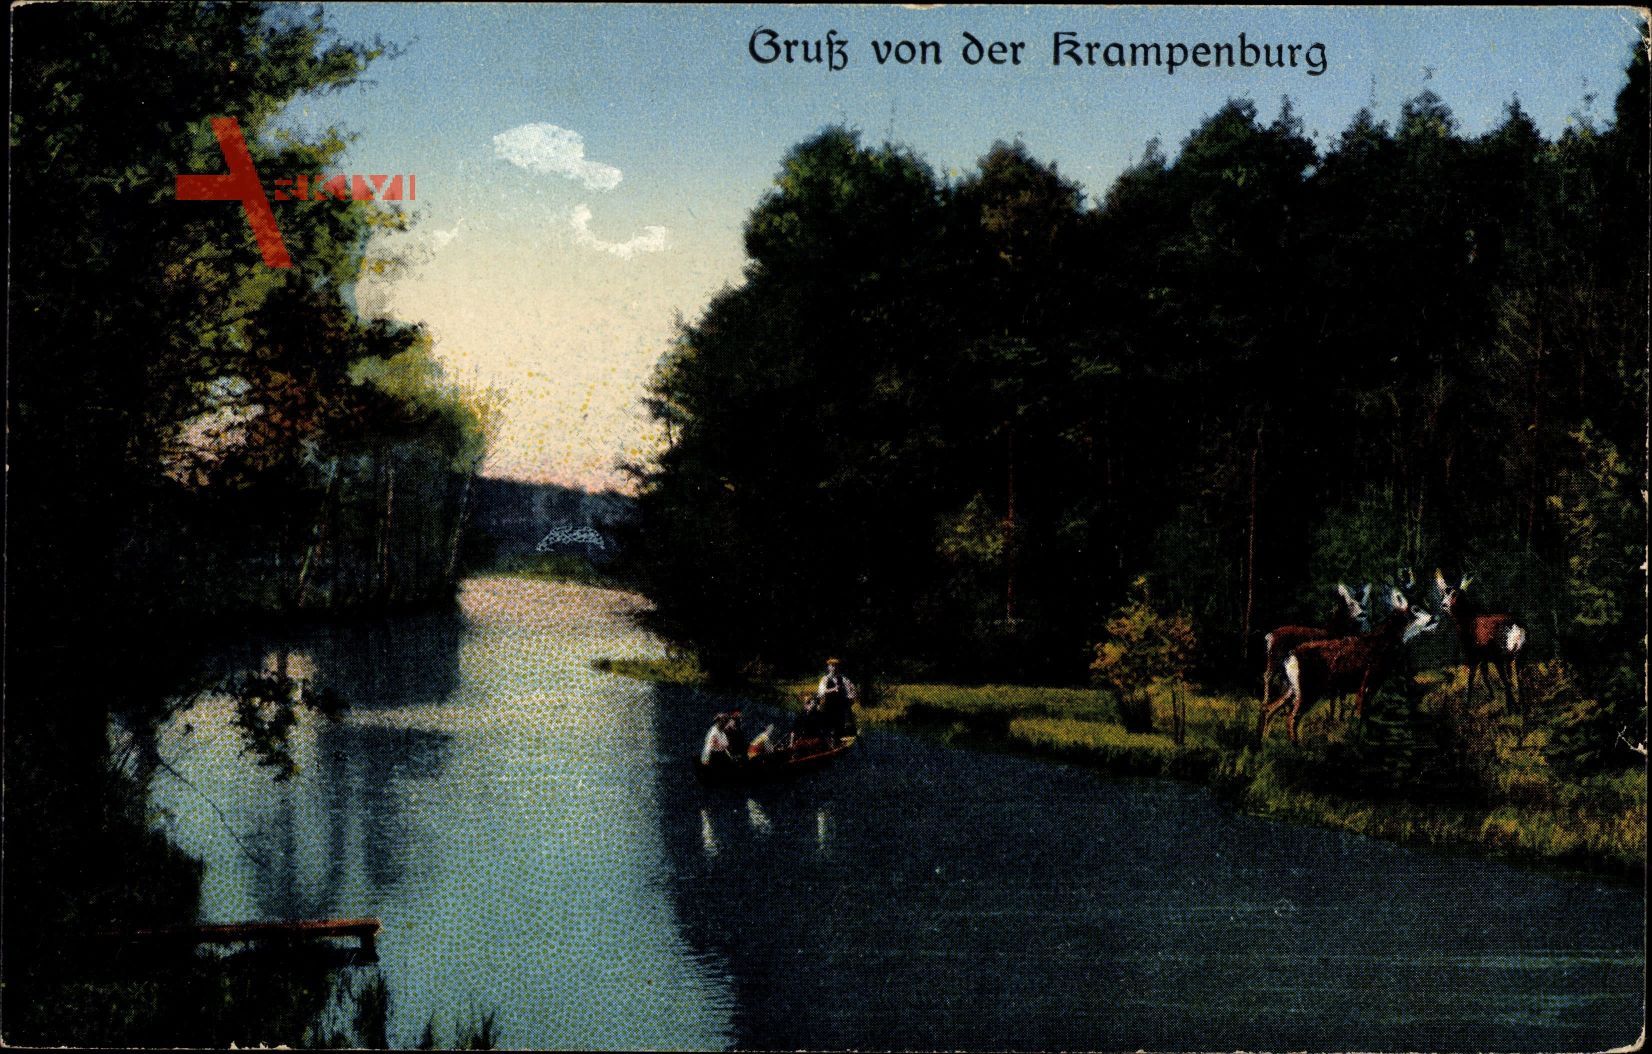 Berlin Köpenick, Hirsche am Wasser, Personen im Boot, Krampenburg